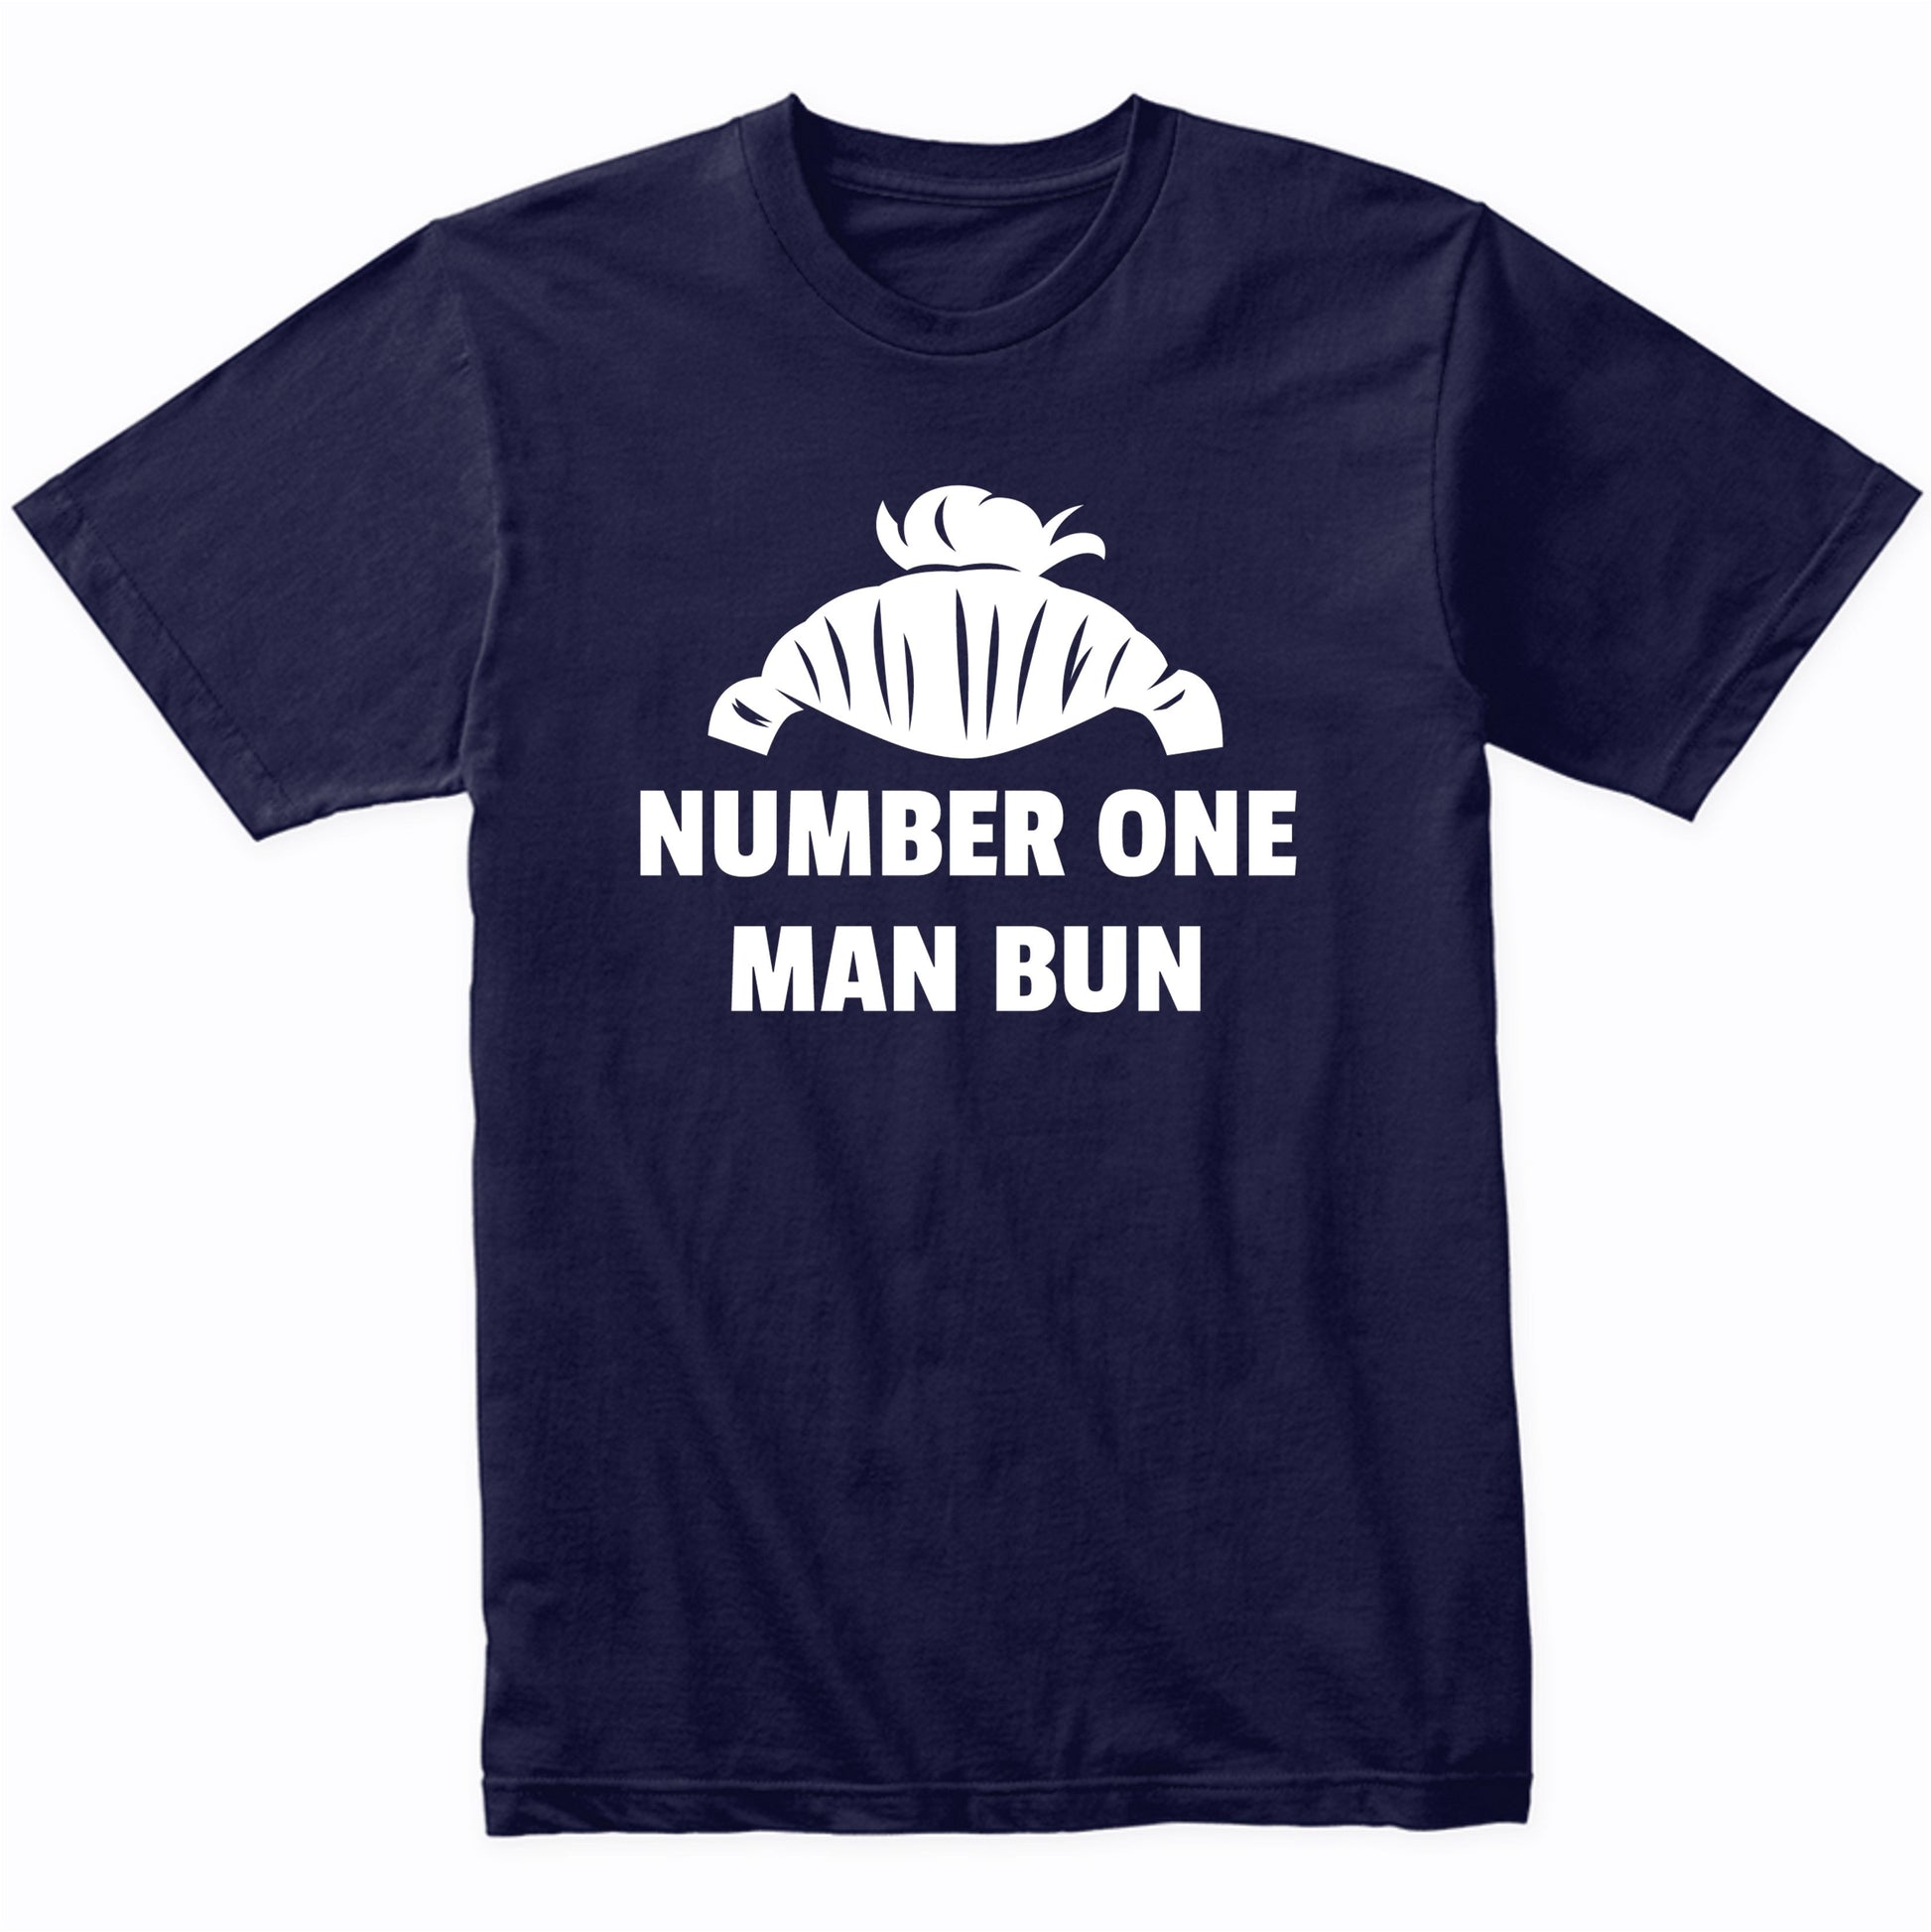 Number One Man Bun Shirt